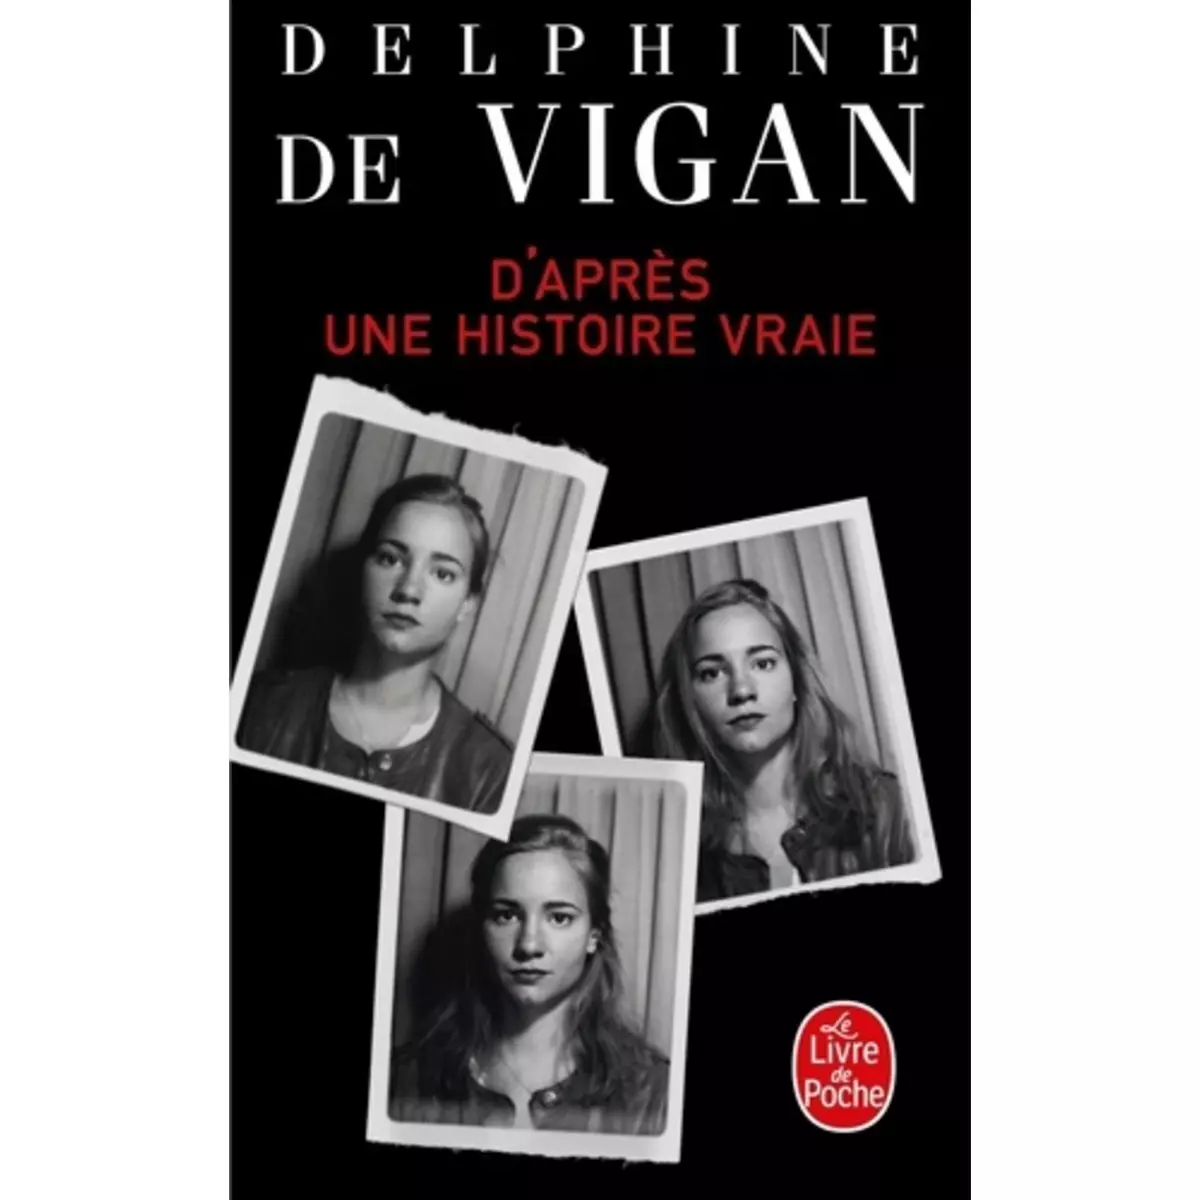  D'APRES UNE HISTOIRE VRAIE, Vigan Delphine de